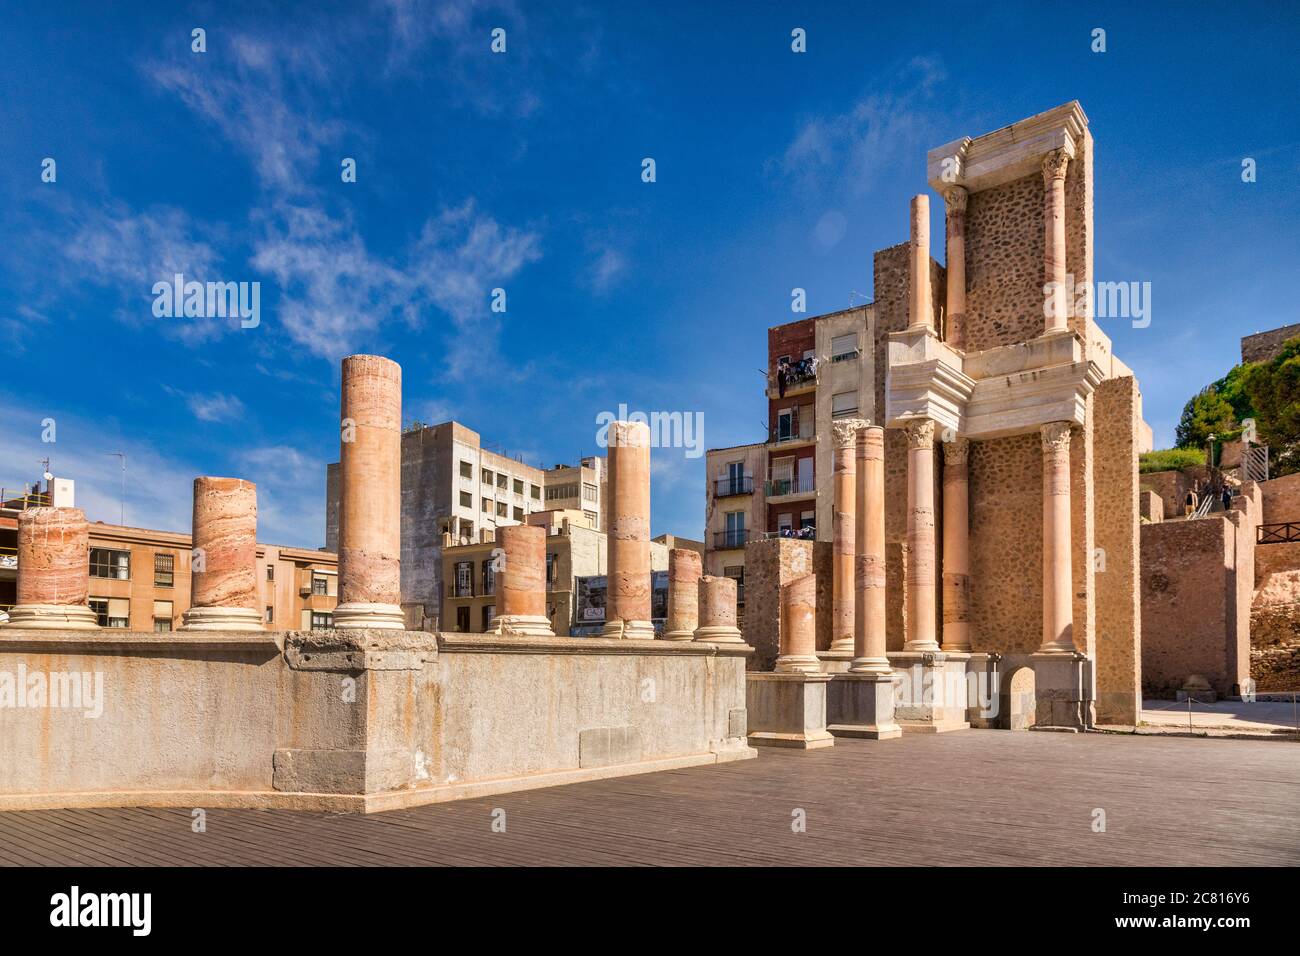 7 marzo 2020: Cartagena, Spagna - non vi sono persone riconoscibili nel Teatro Romano di Cartagena, parzialmente restaurato, risalente al regno di Augusto. Foto Stock